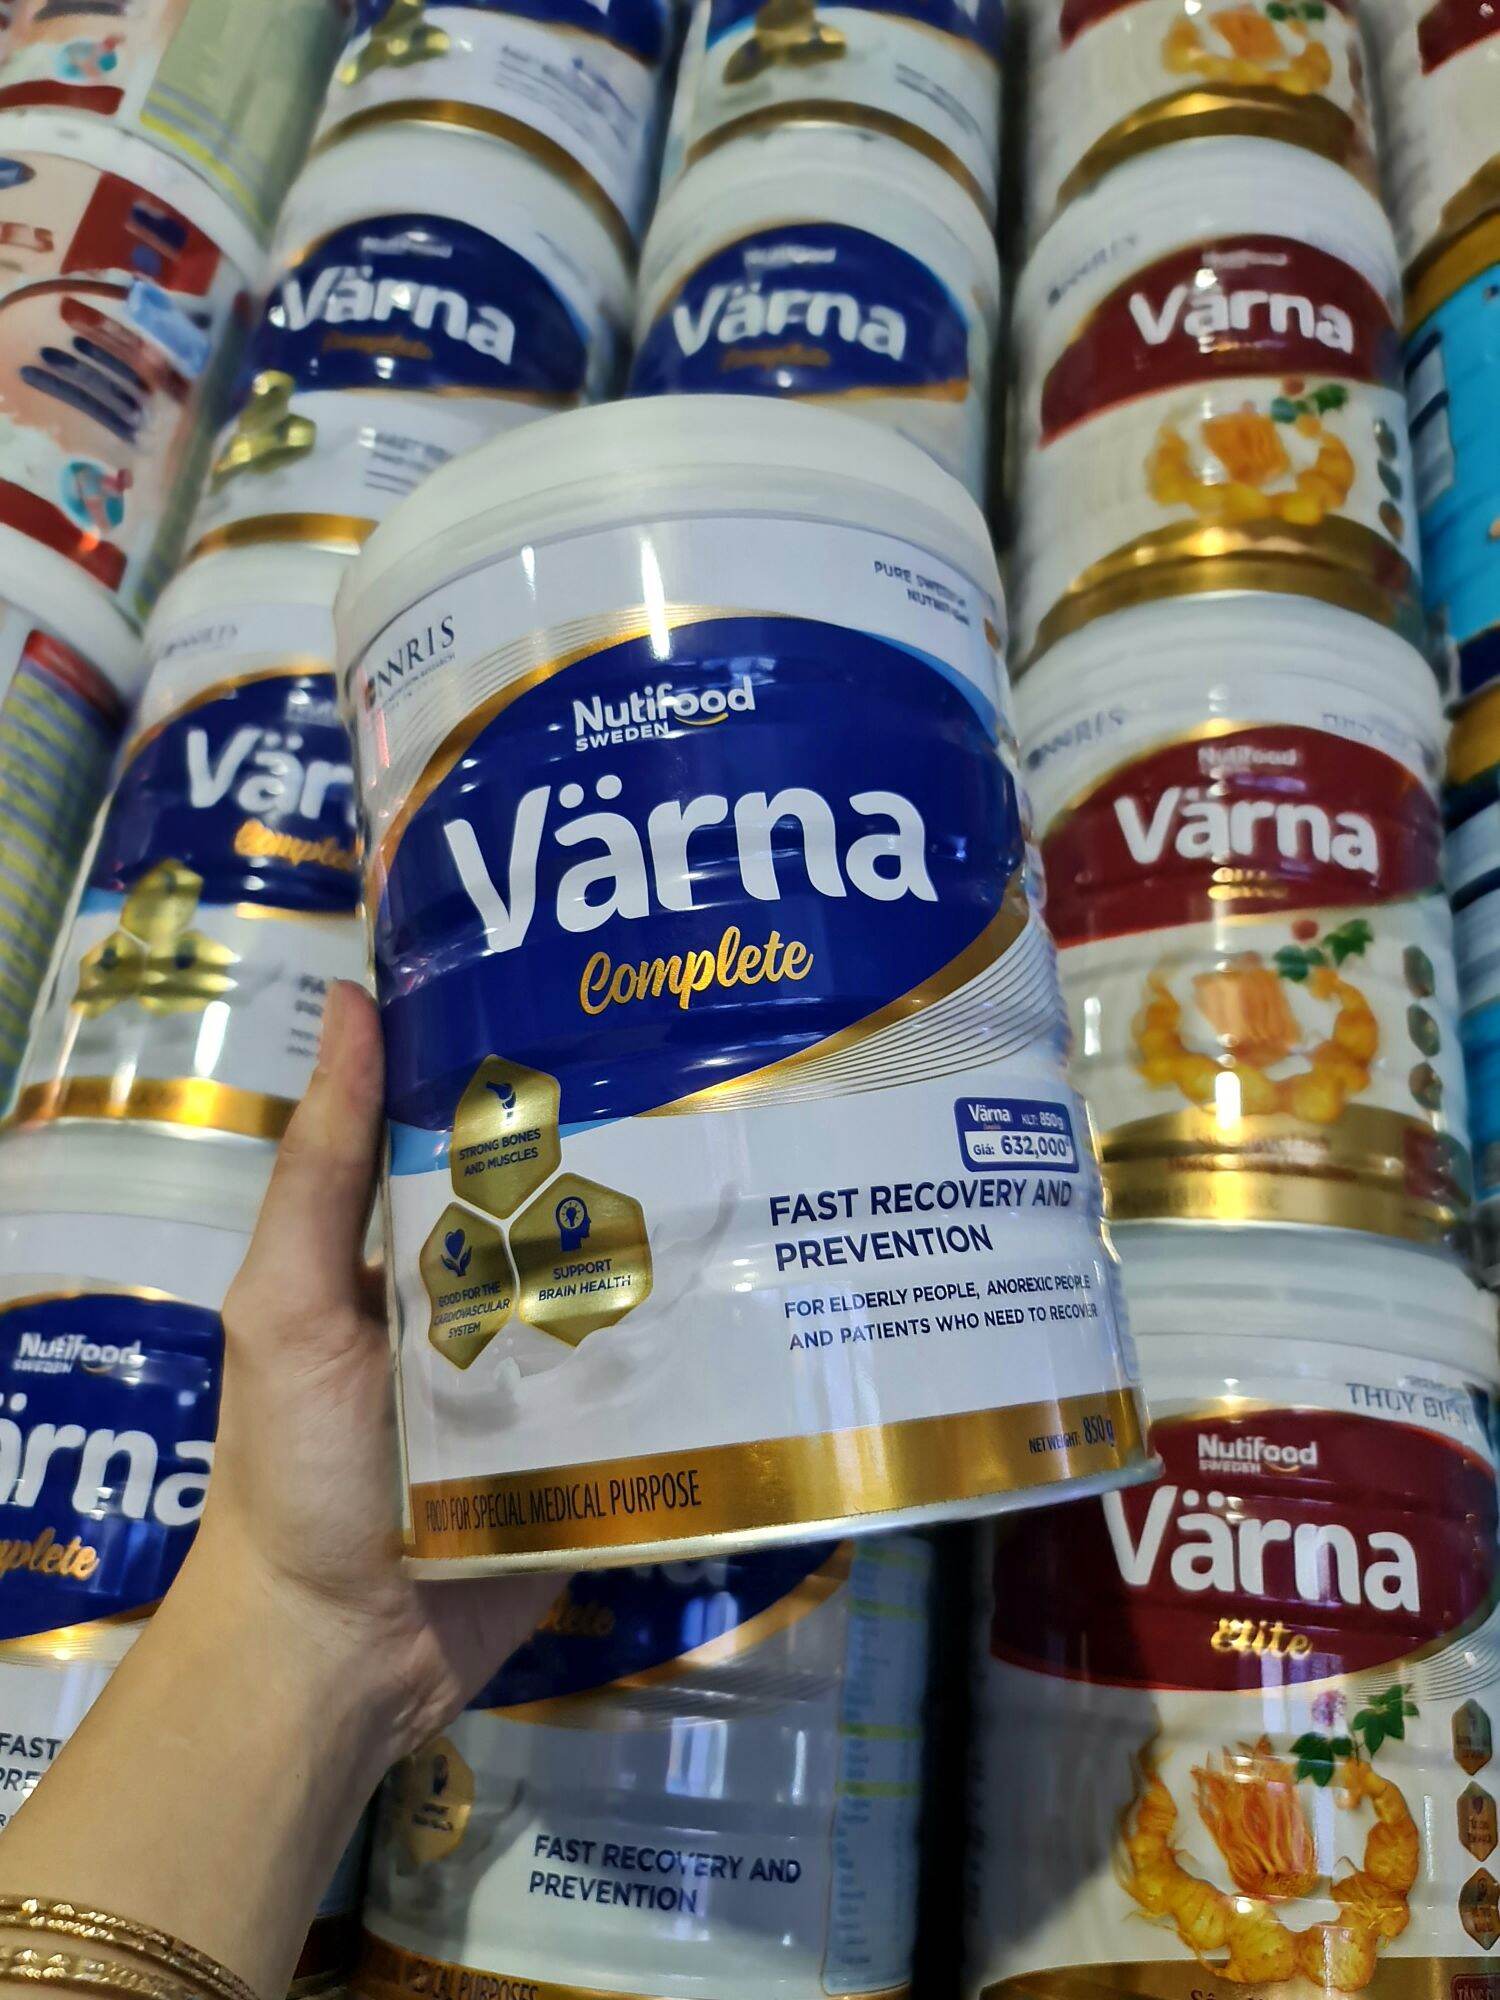 Sữa bột Varna complete Nutifood dành riêng cho người lớn tuổi phòng ngừa